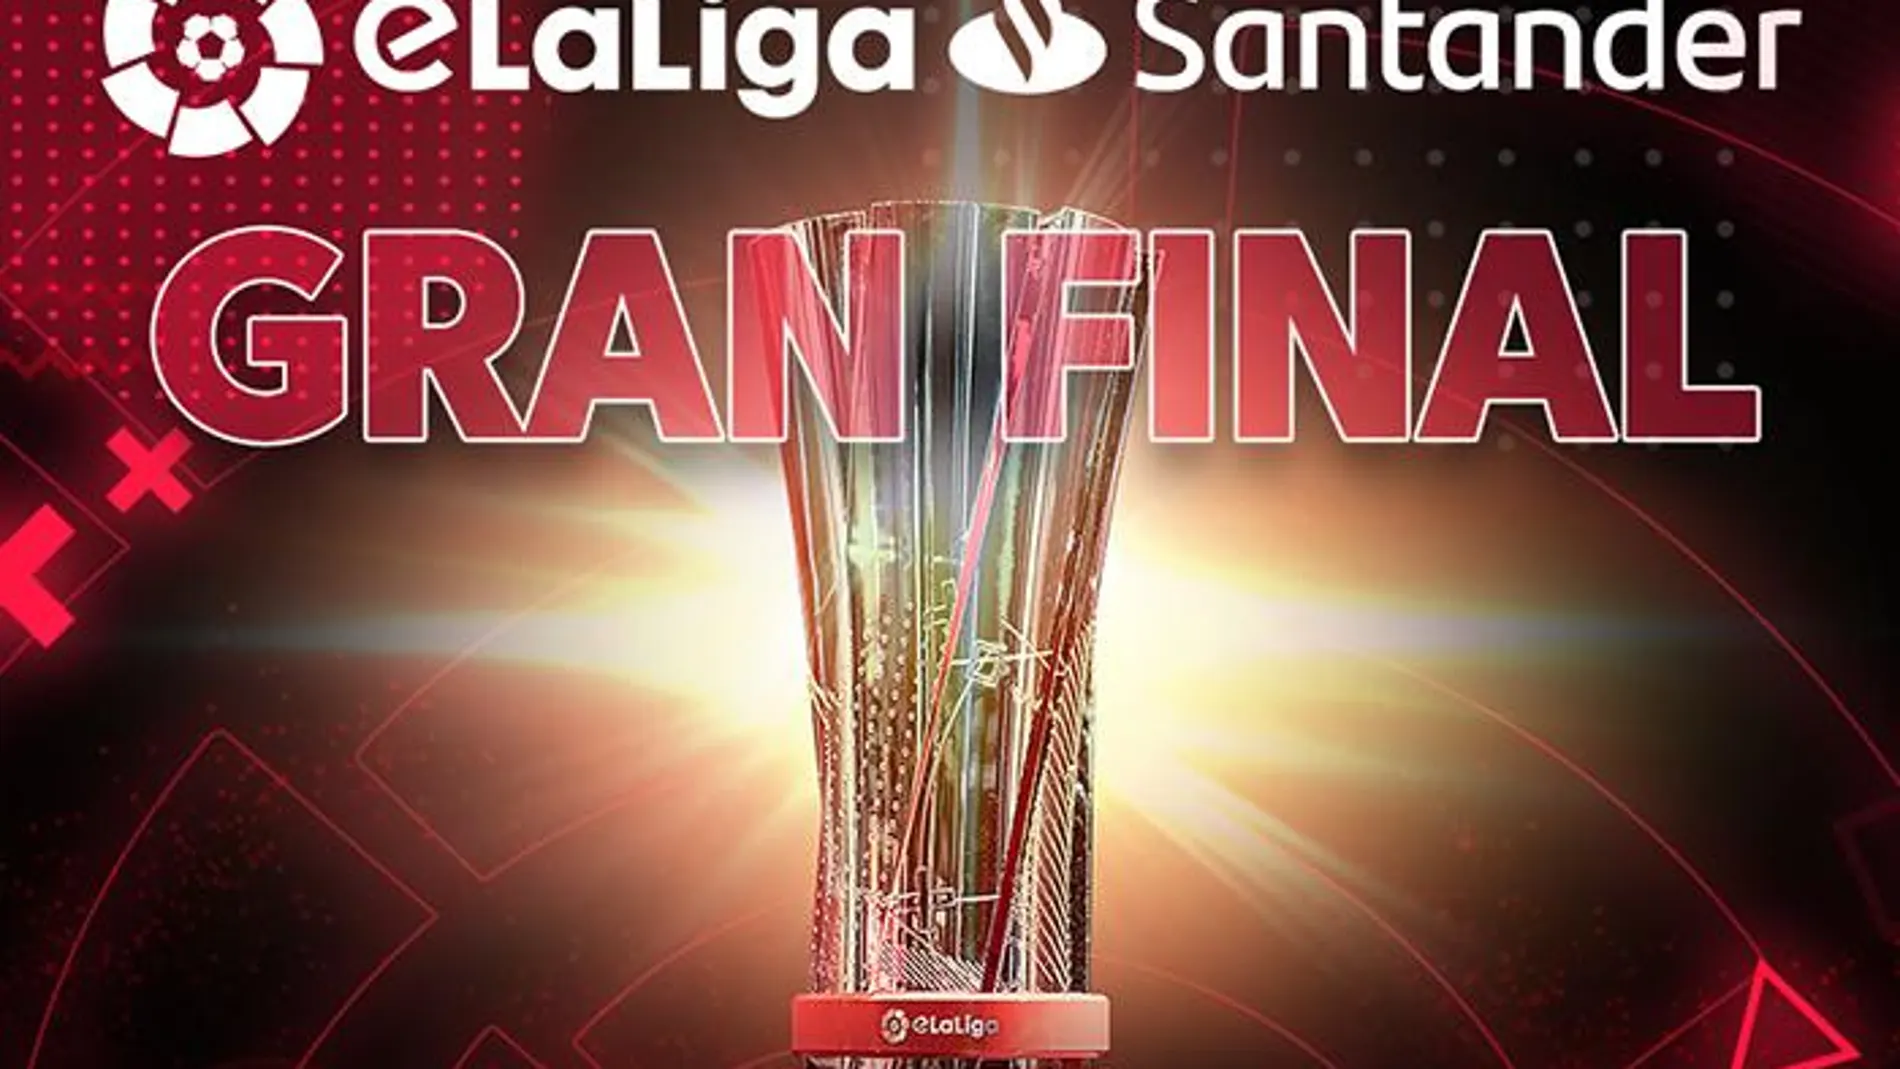 Finales de la eLaLiga Santander